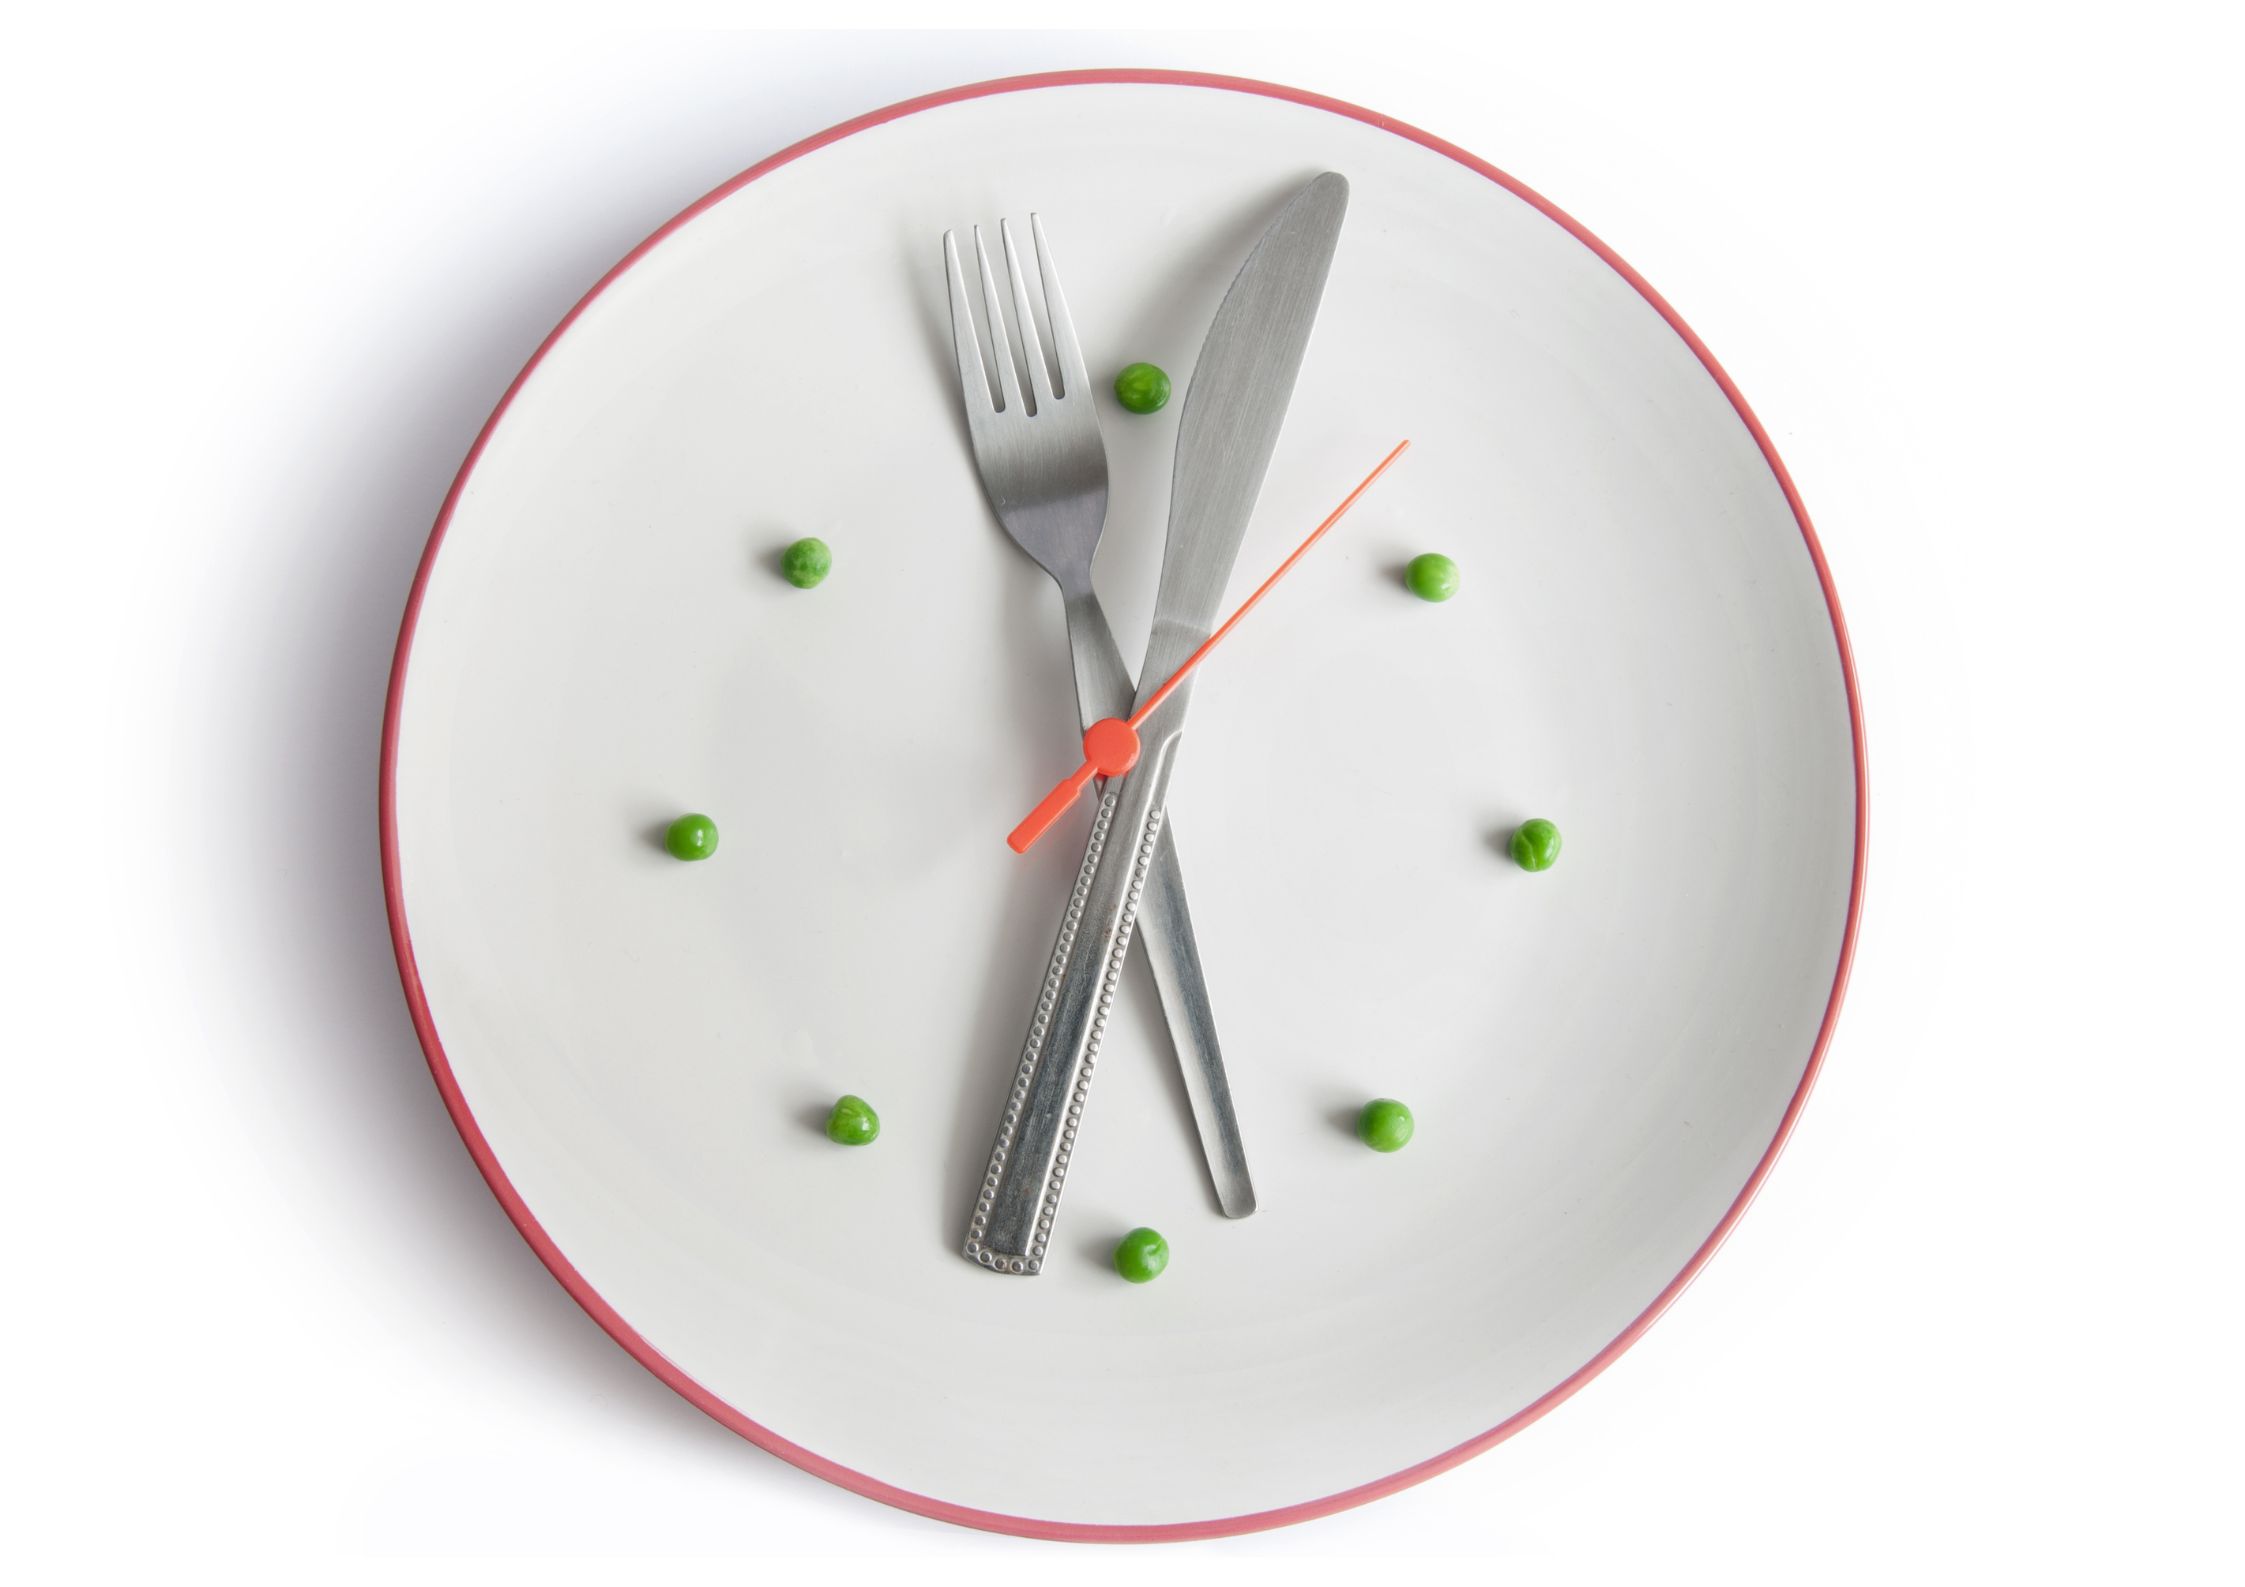 ダイエットをするうえで知っておきたい、食事の最適な時間帯についてお話します!!!page-visual ダイエットをするうえで知っておきたい、食事の最適な時間帯についてお話します!!!ビジュアル